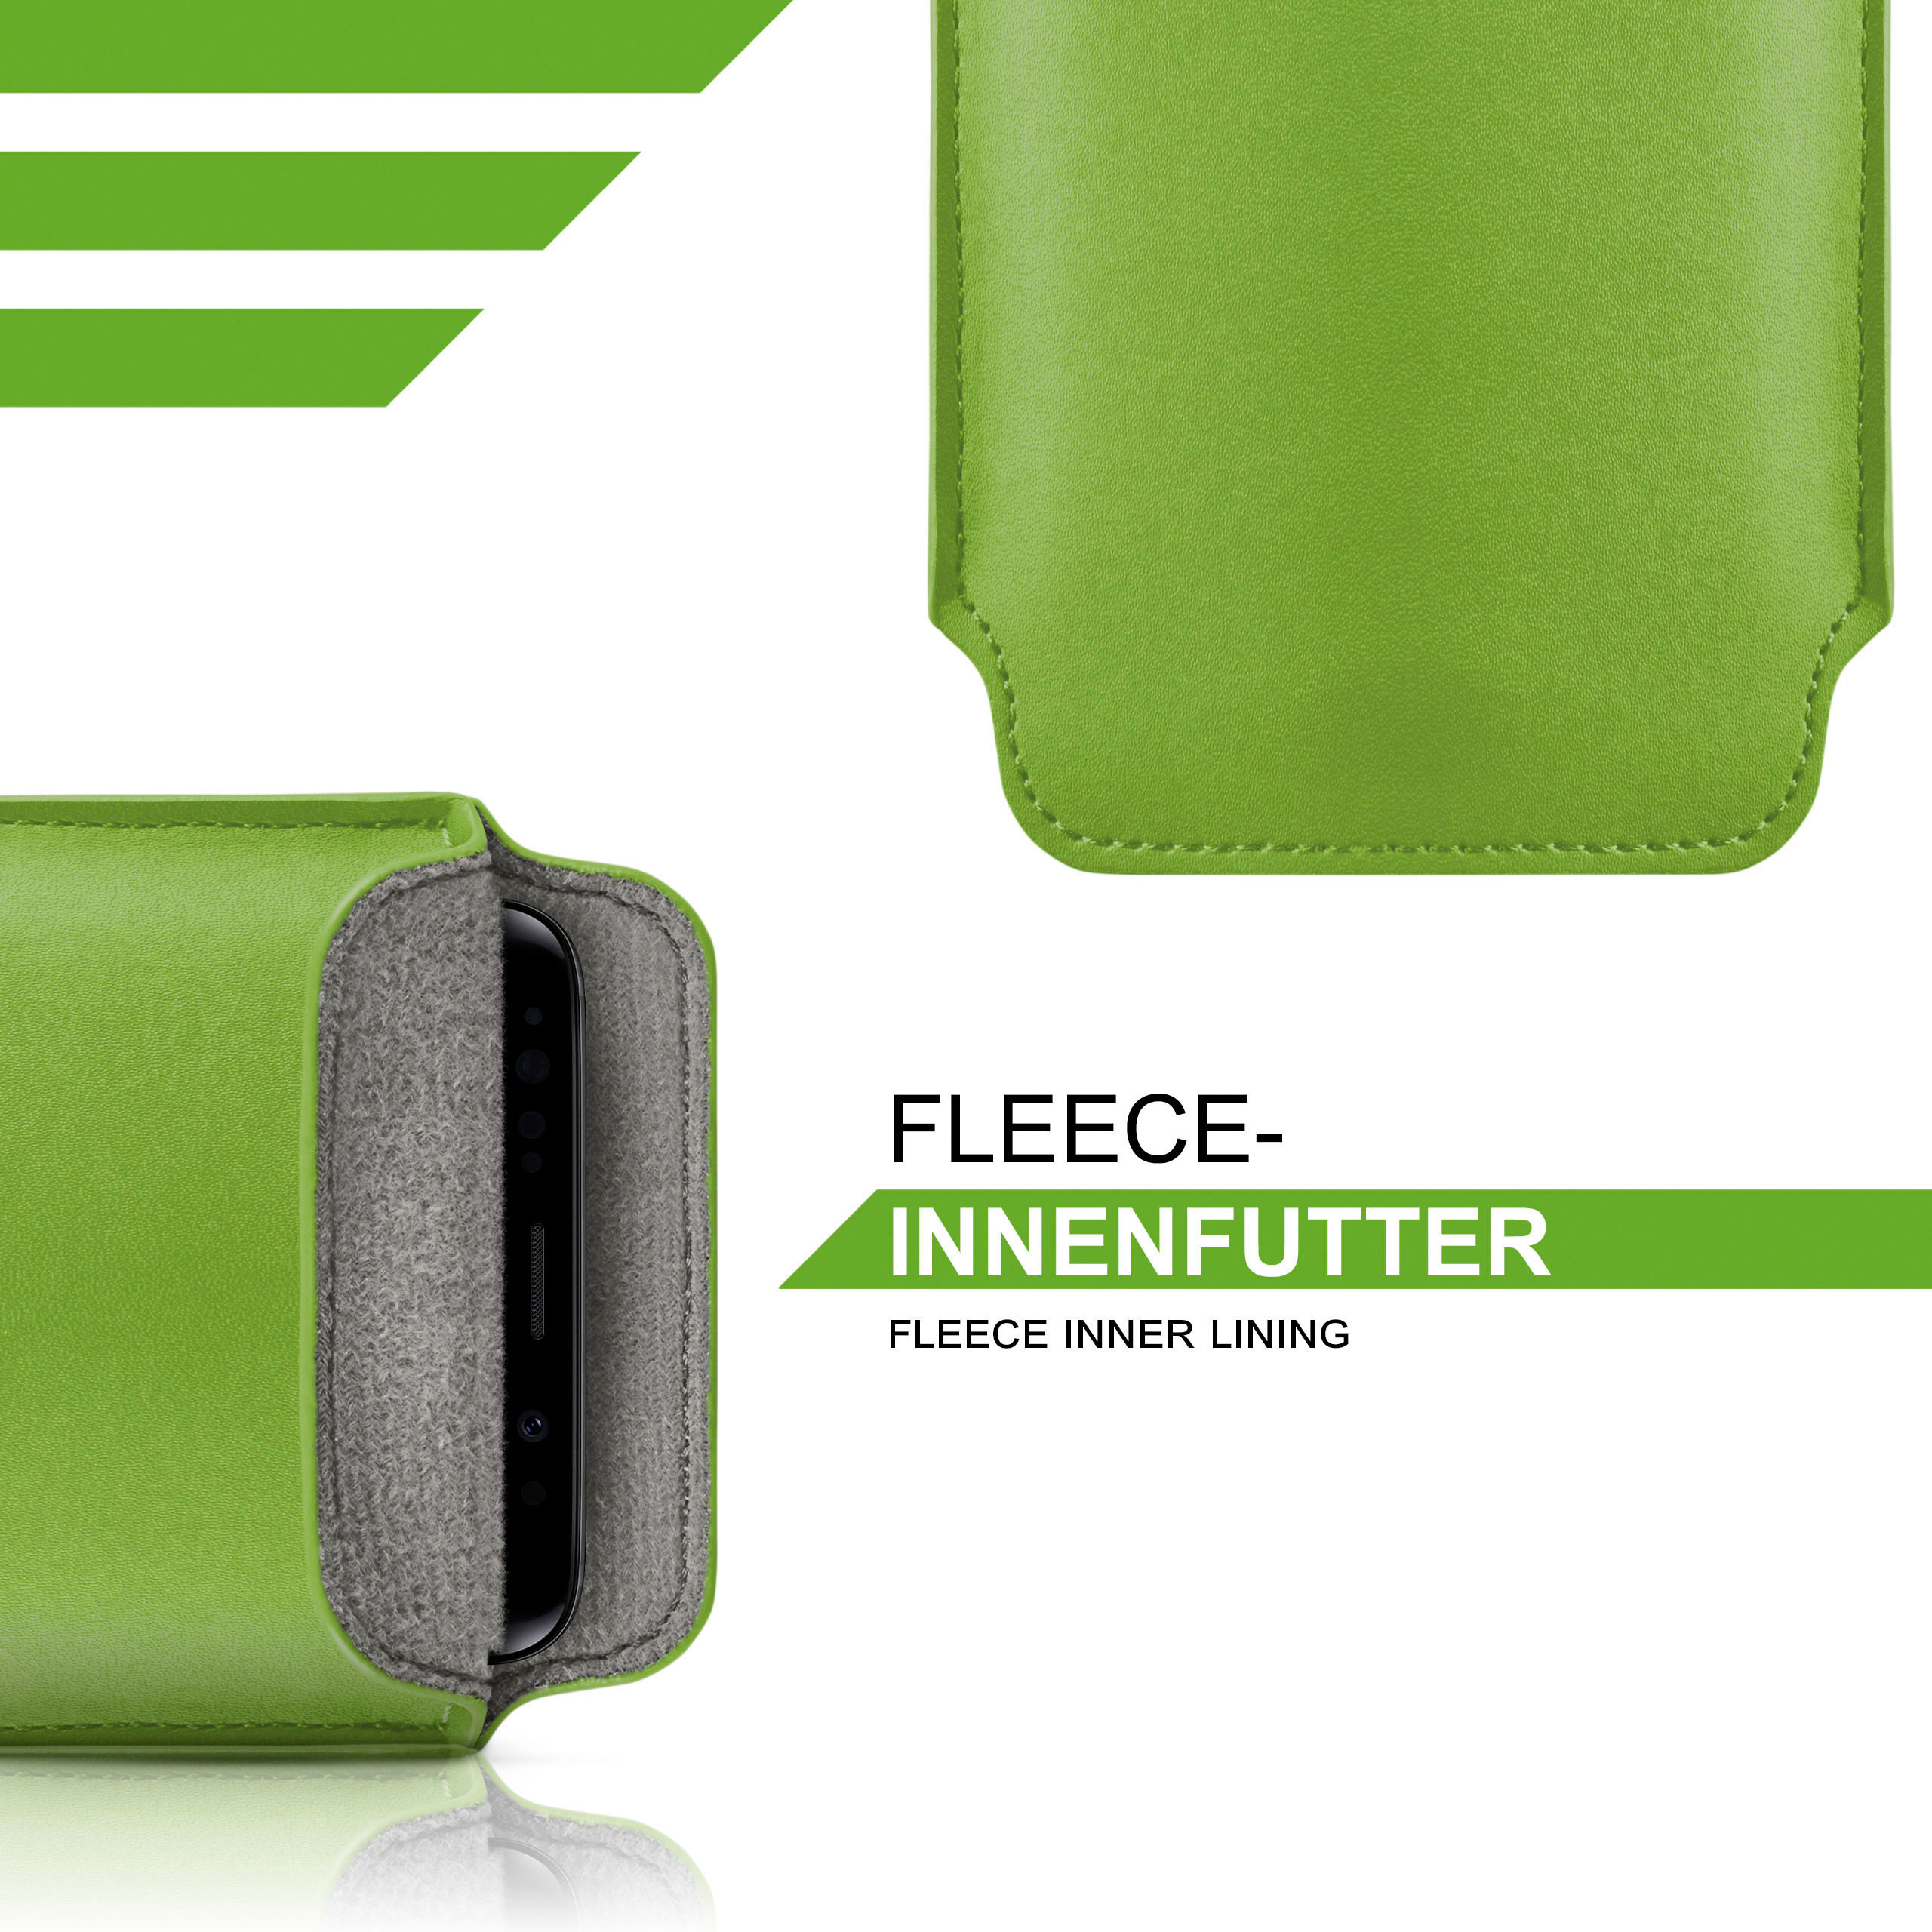 MOEX Slide Case, Full Basic, Flip Lime-Green Emporia, Cover